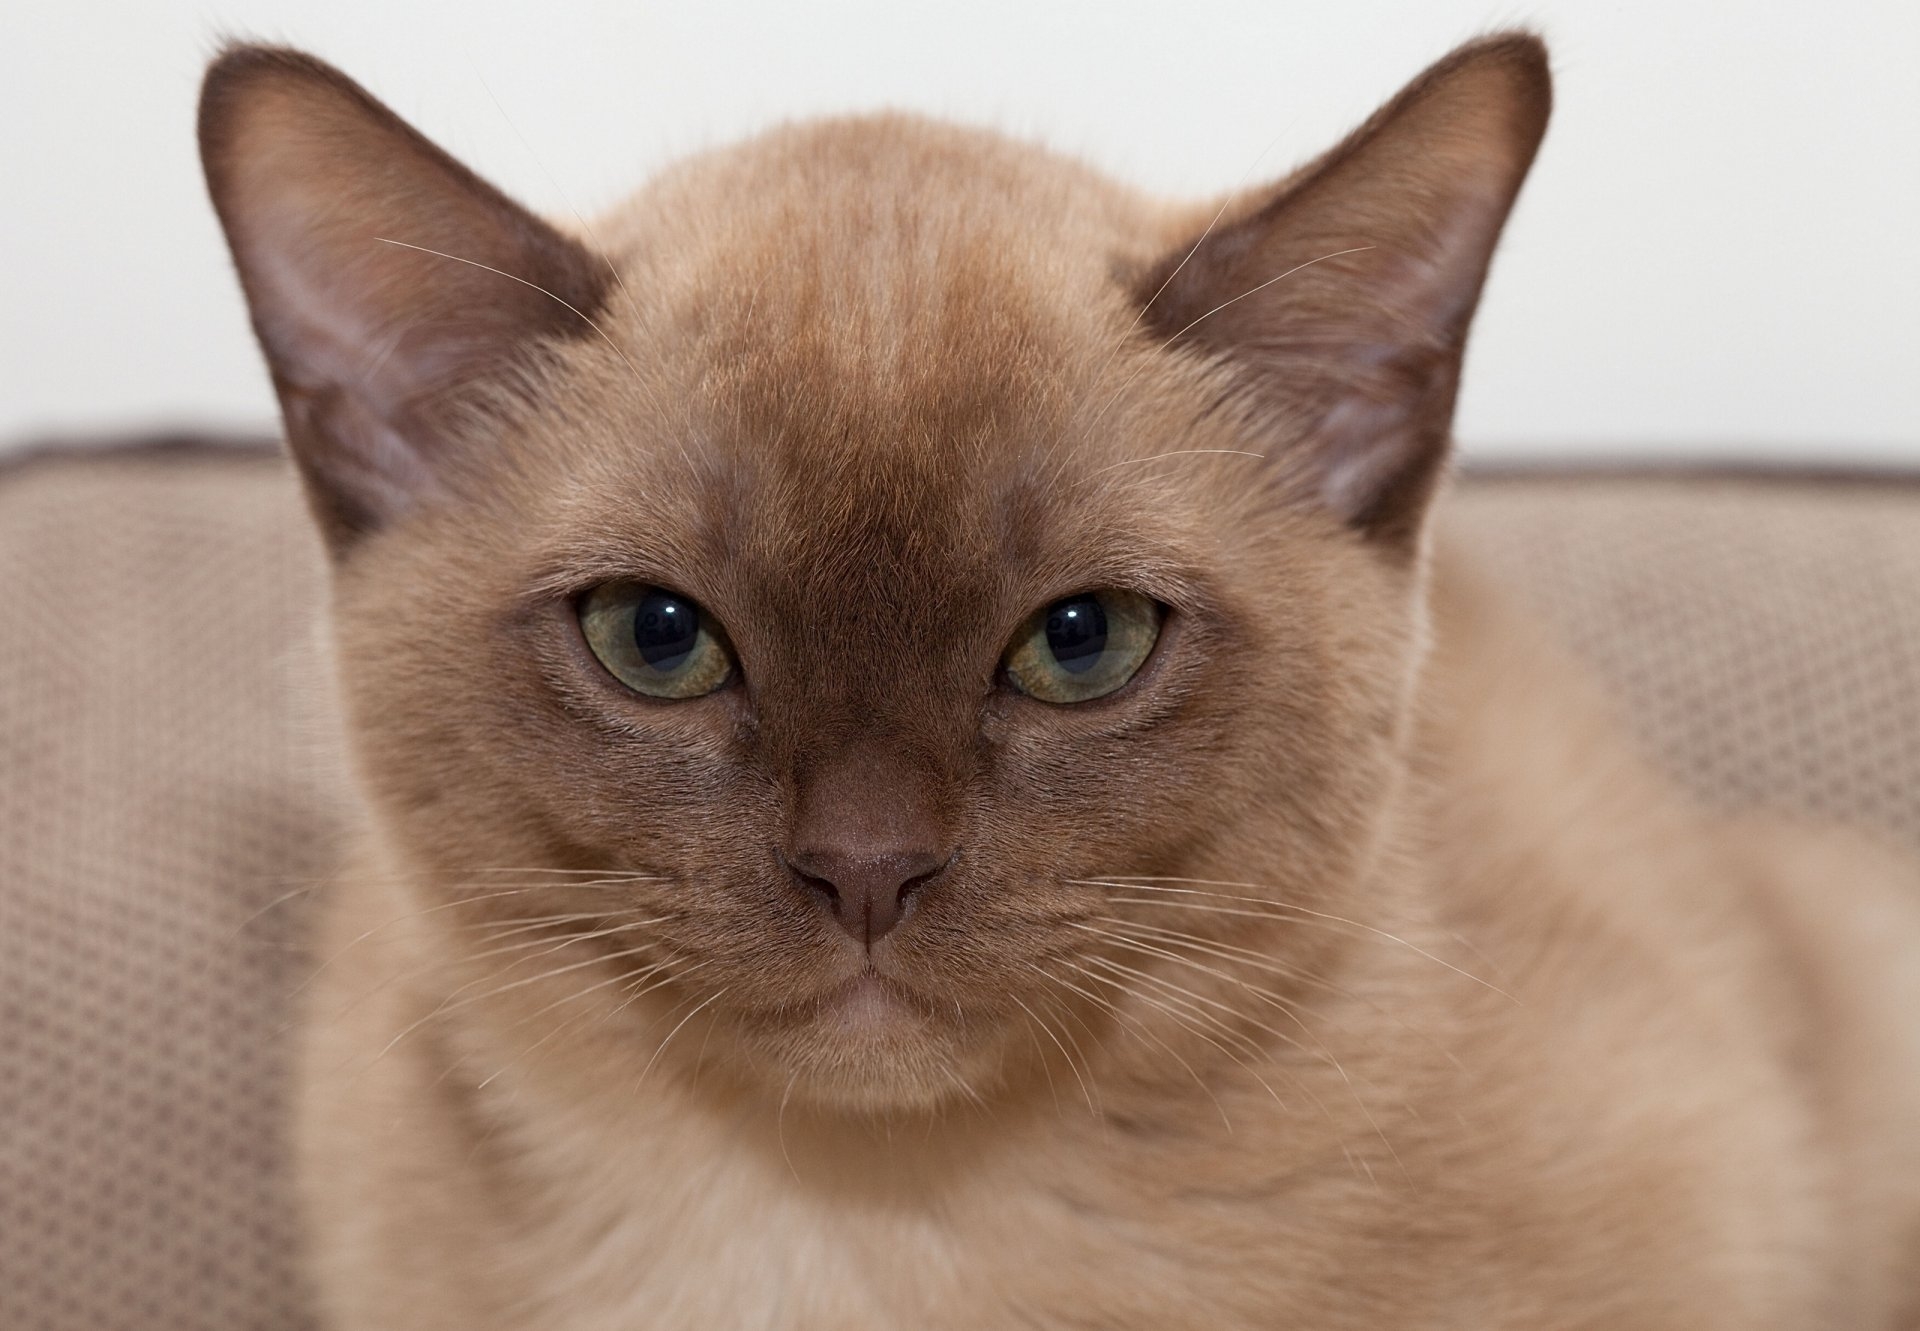 Бурманская кошка рыжая - картинки и фото koshka.top